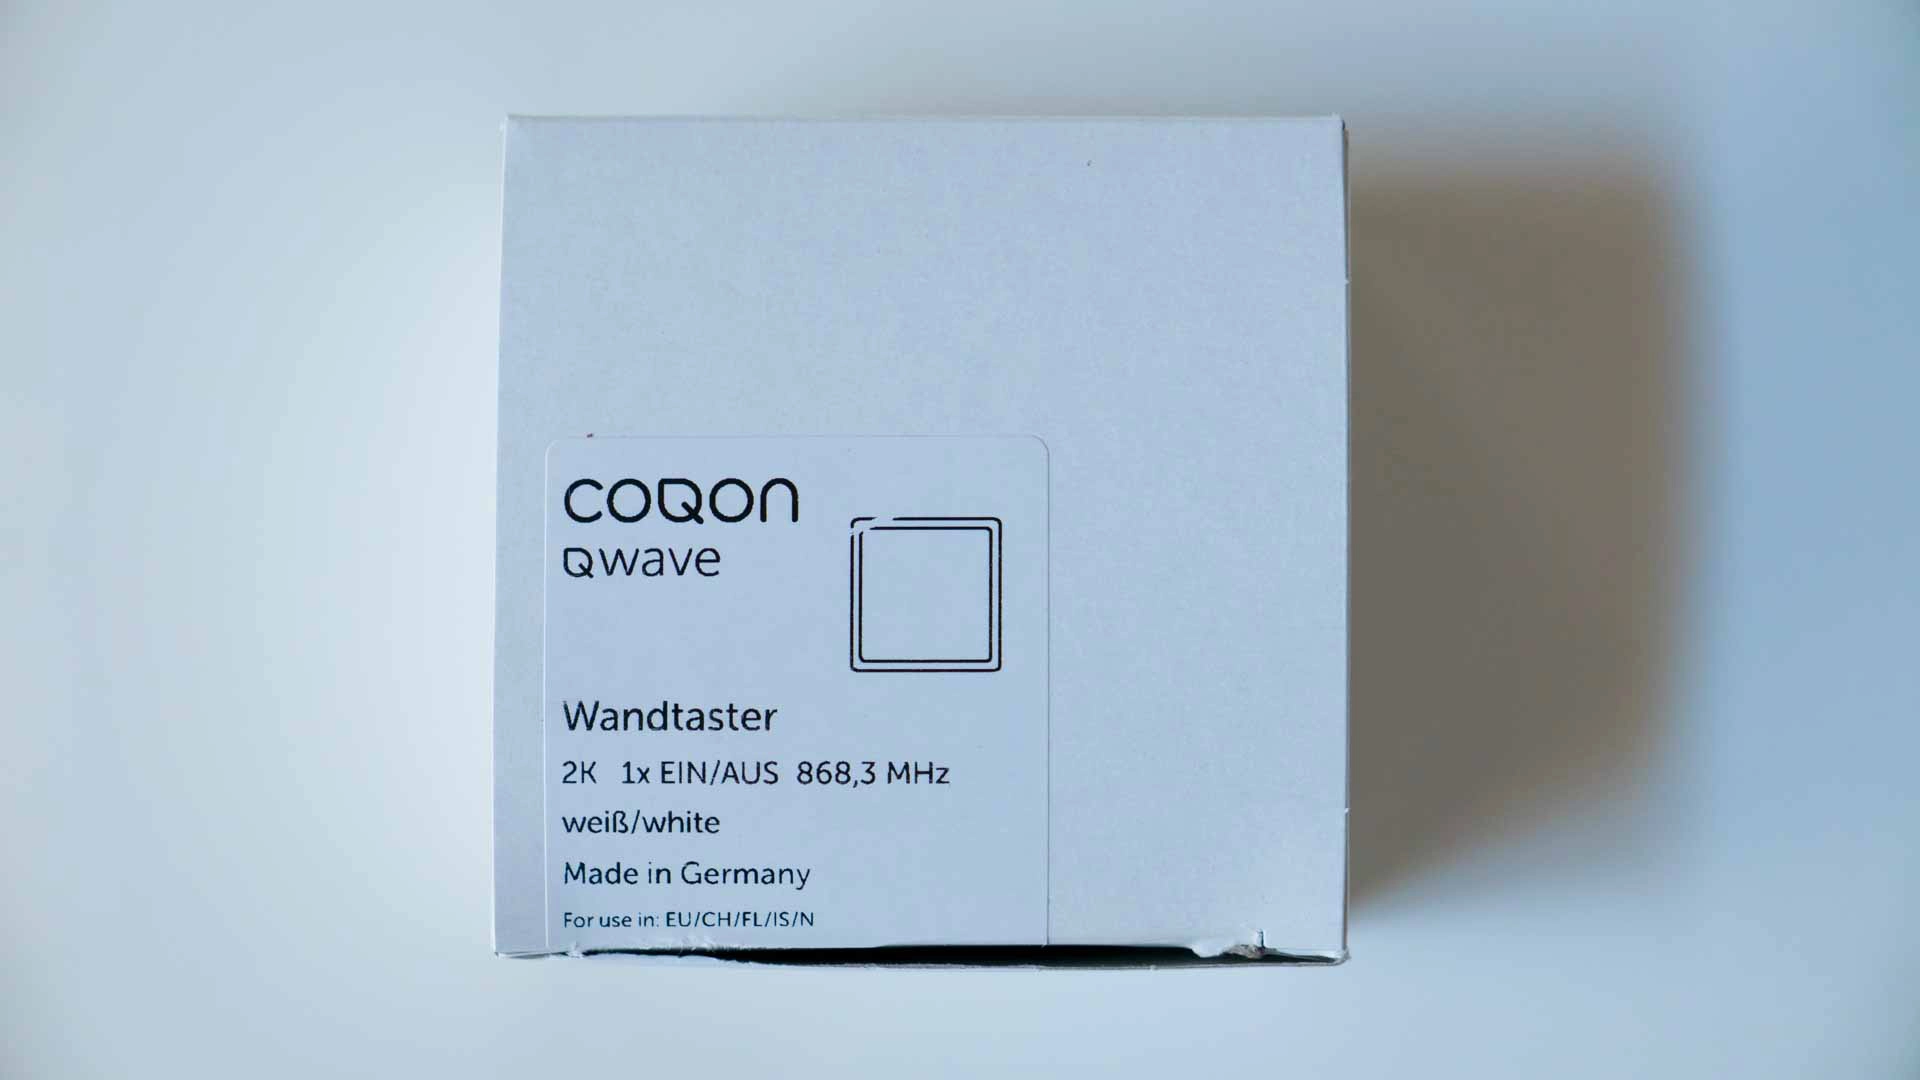 COQON-Wandtaster-Verpackung-oben